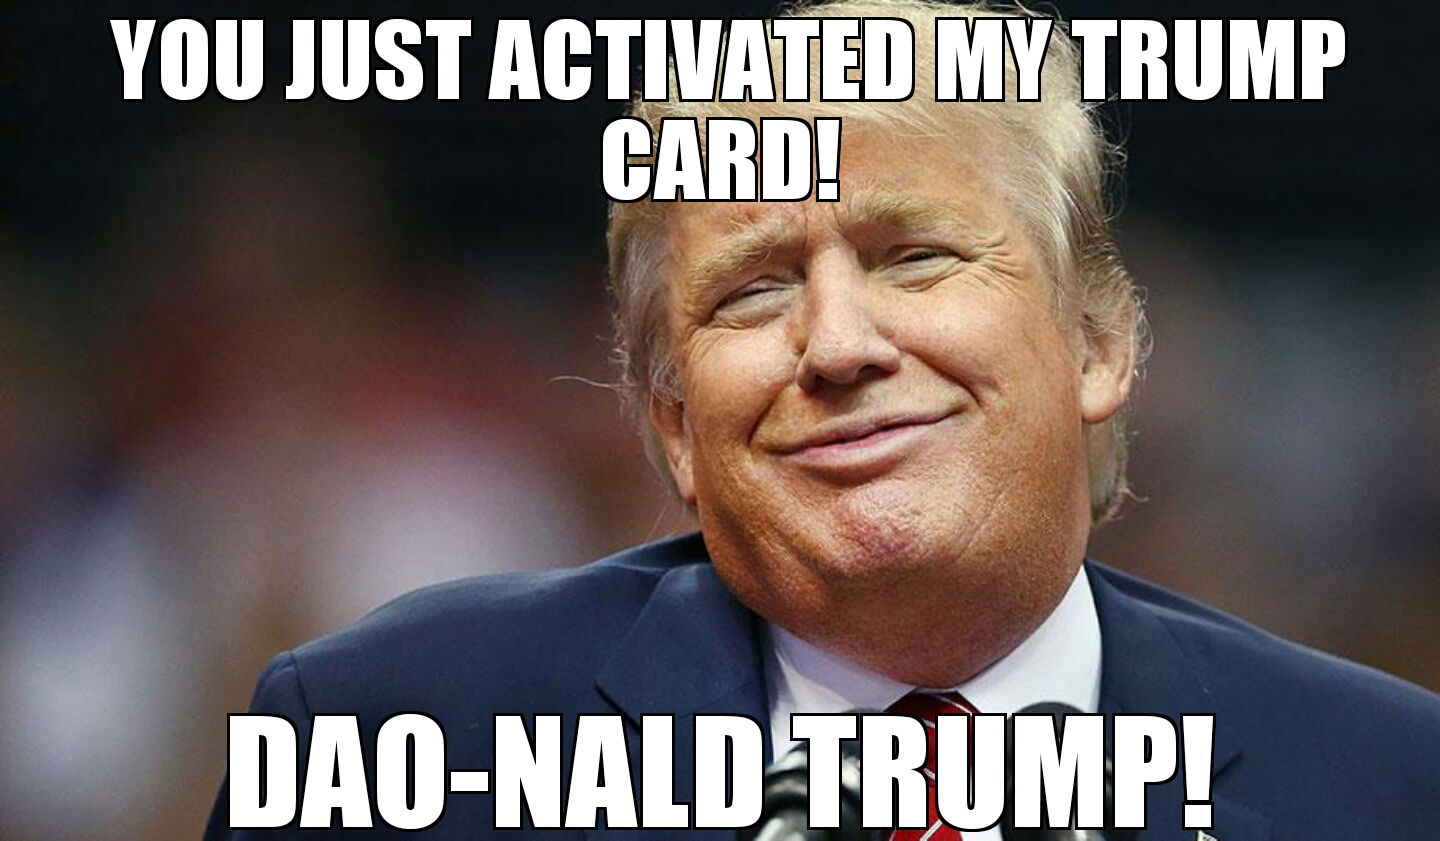 Image Dao Nald Trump Memejpg Ultra Fan Wiki FANDOM Powered By